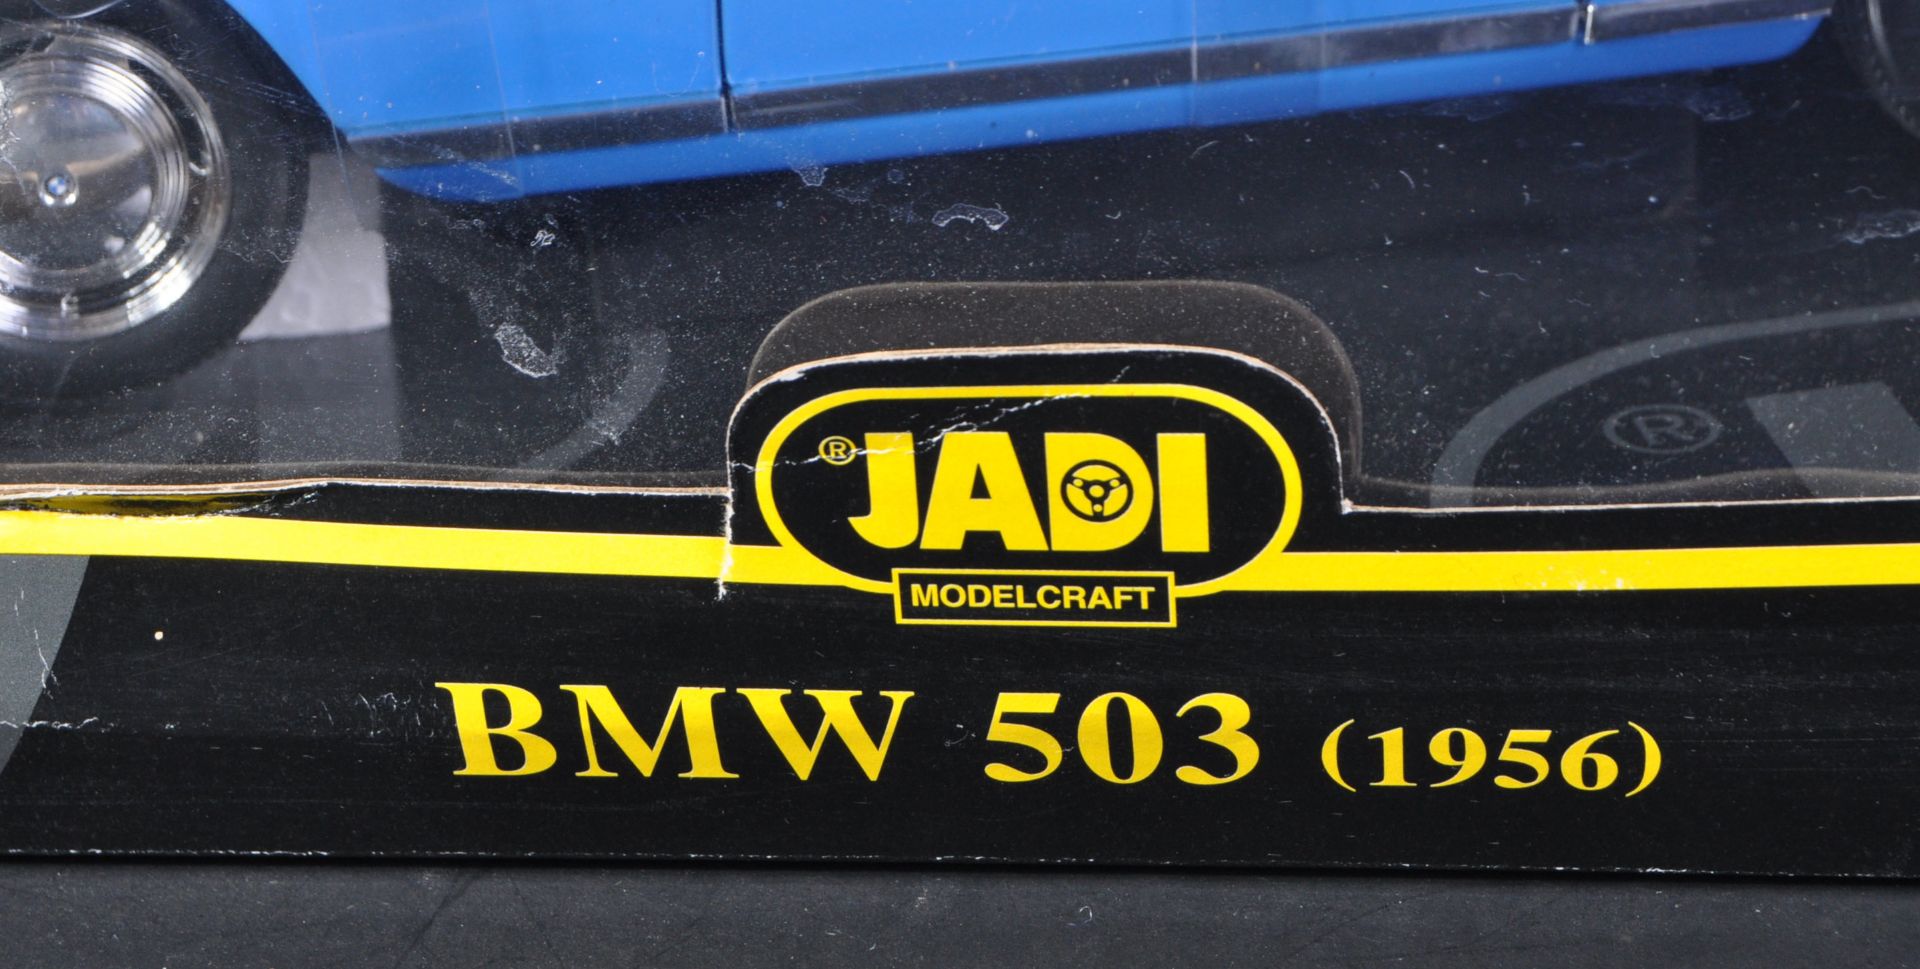 ORIGINAL JADI MODEL CRAFT 1/18 SCALE DIECAST MODEL BMW 503 COUPE - Bild 4 aus 5